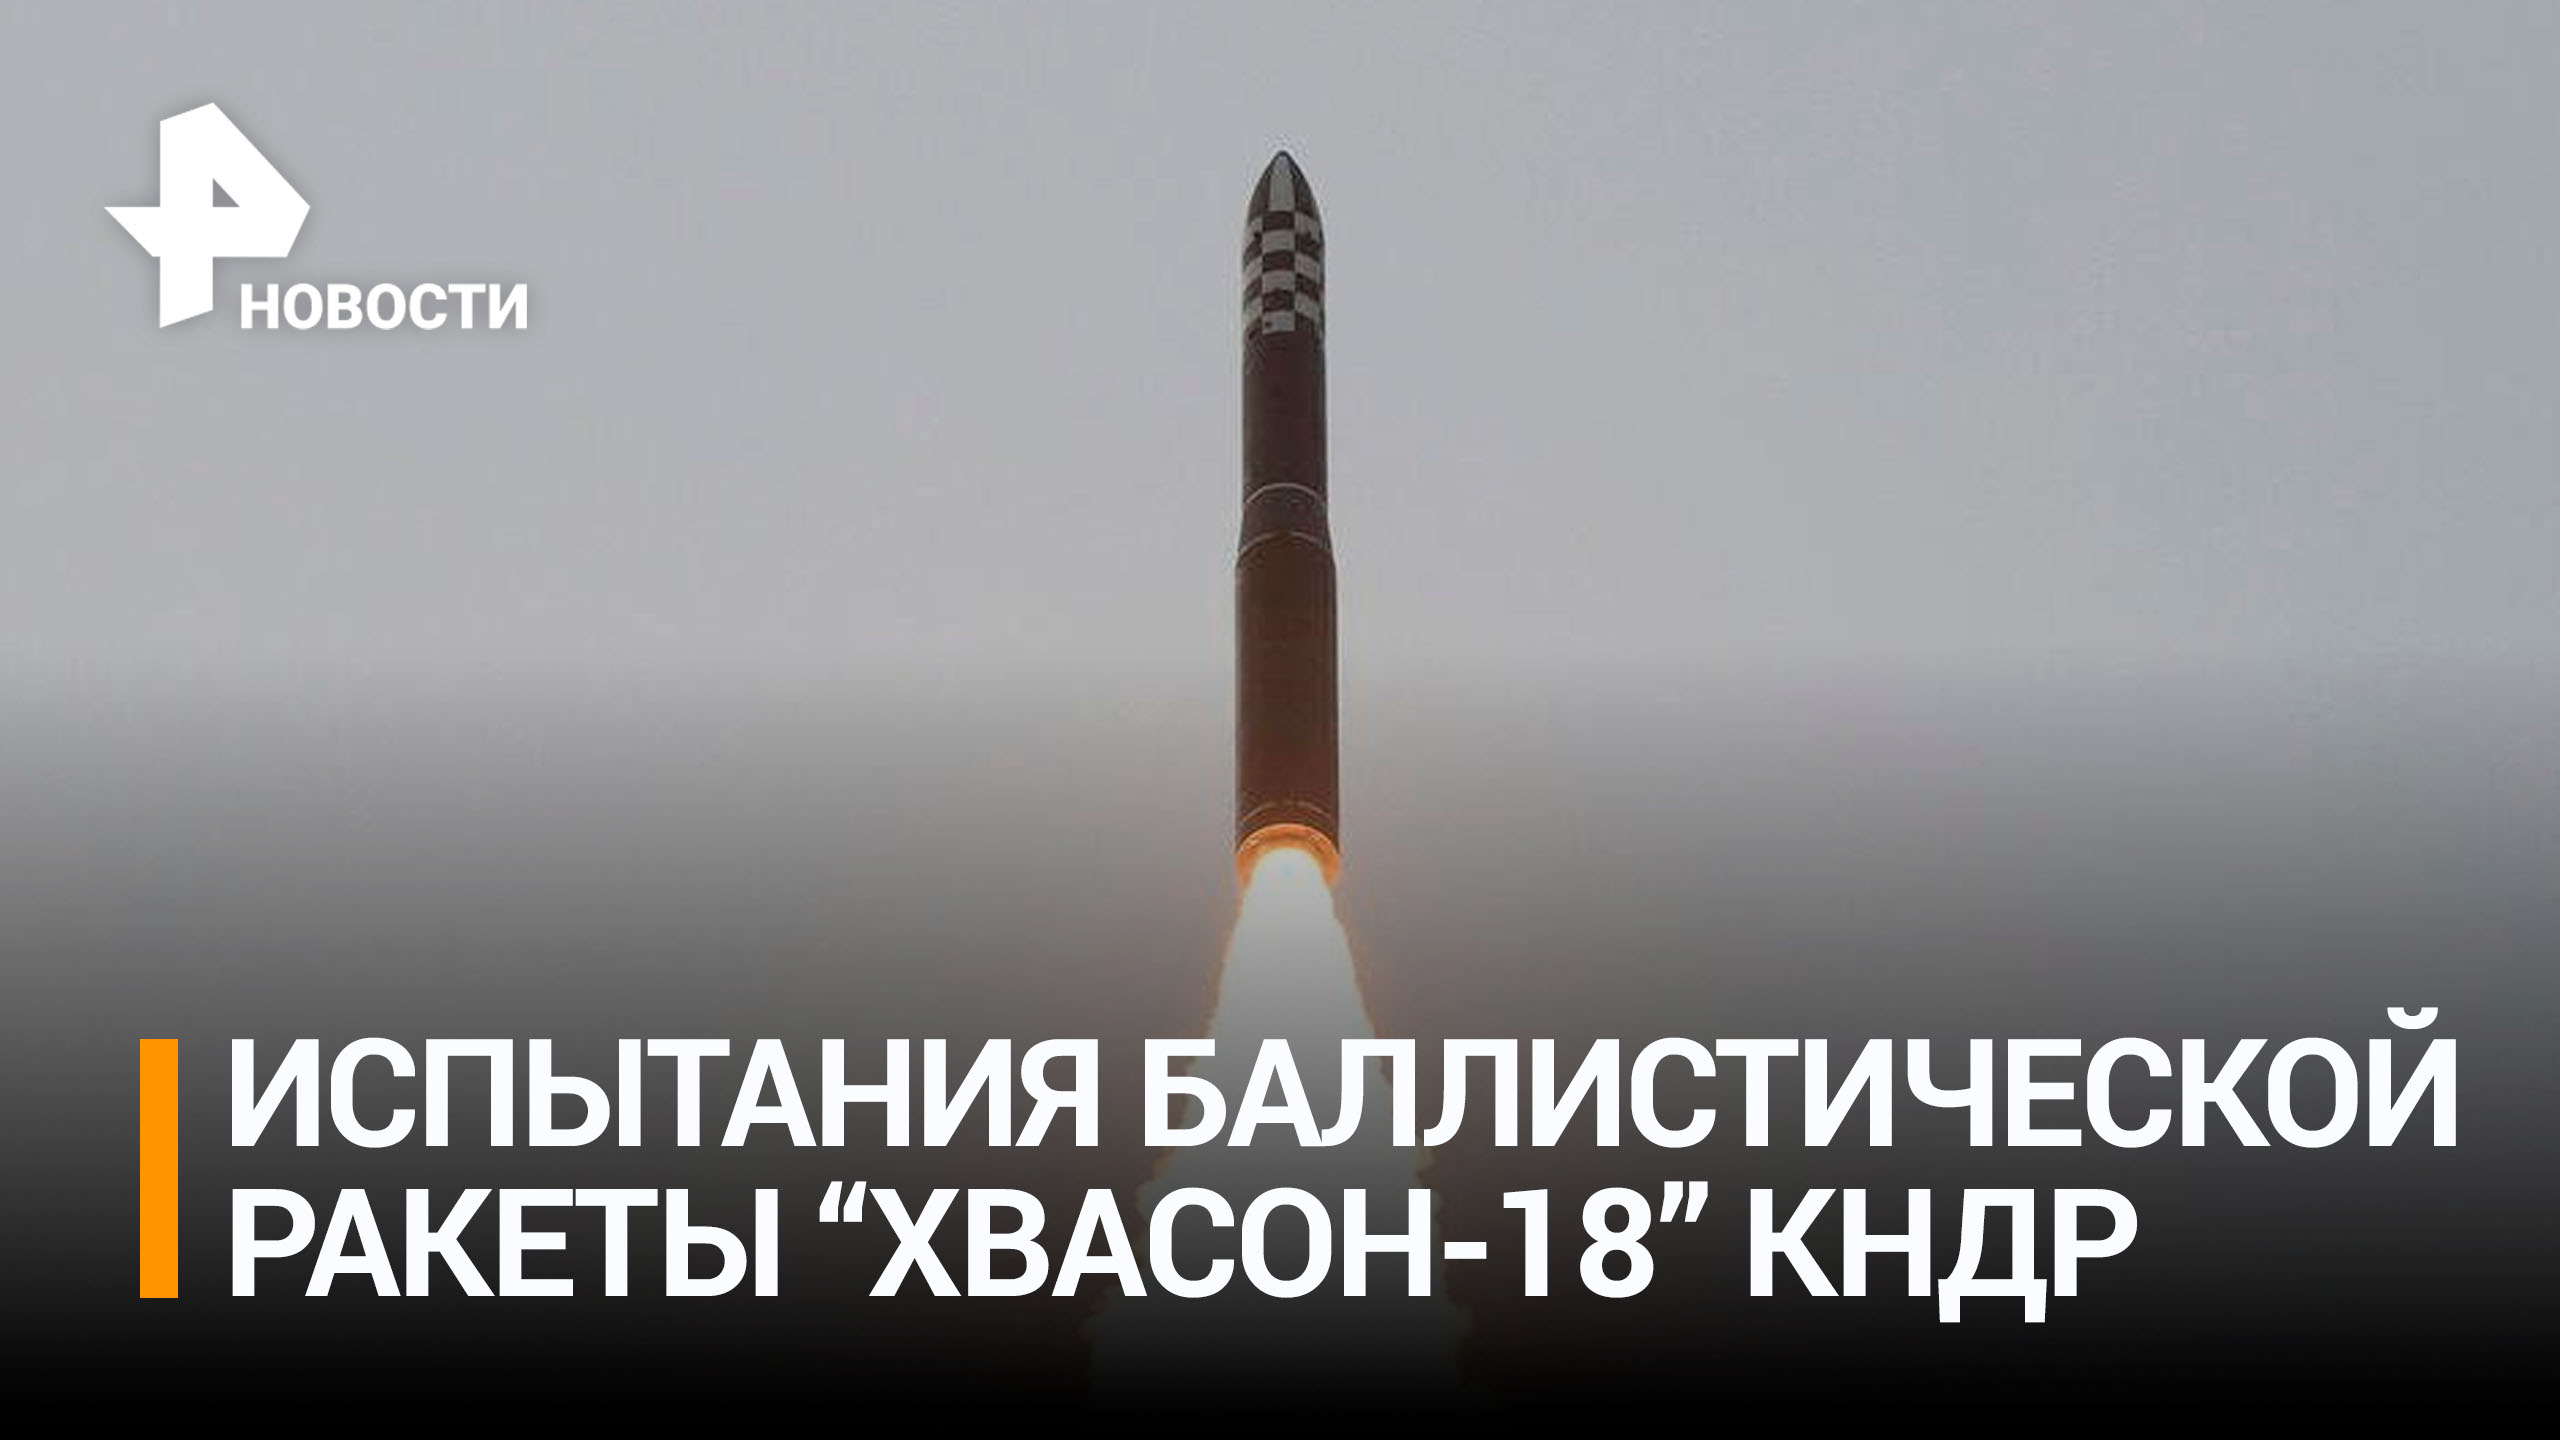 КНДР провела испытания баллистической ракеты Hwasong-18 / РЕН Новости